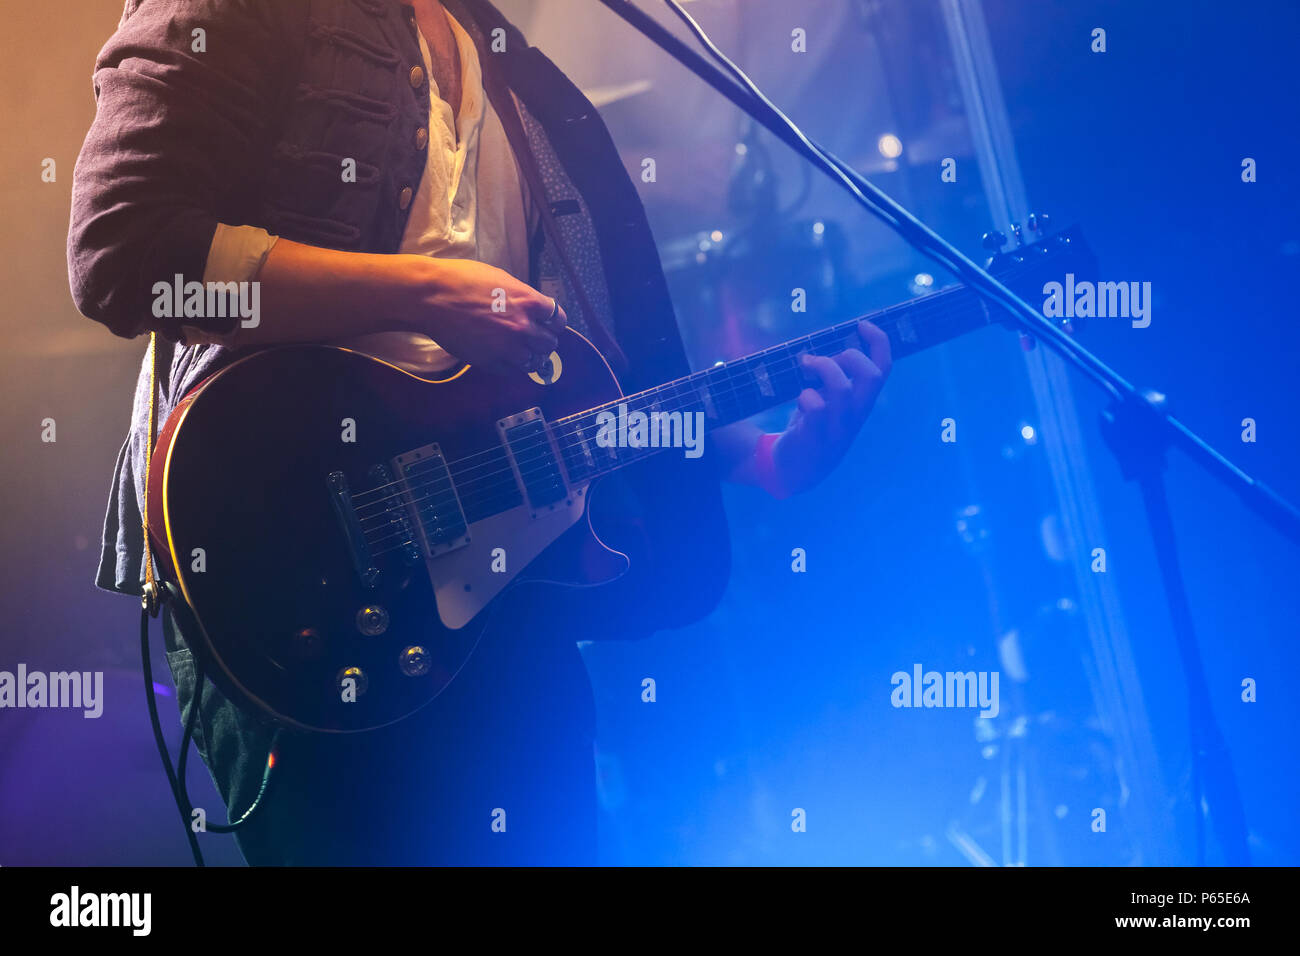 Il chitarrista sul palco gioca su una chitarra elettrica, una foto con morbida messa a fuoco selettiva Foto Stock